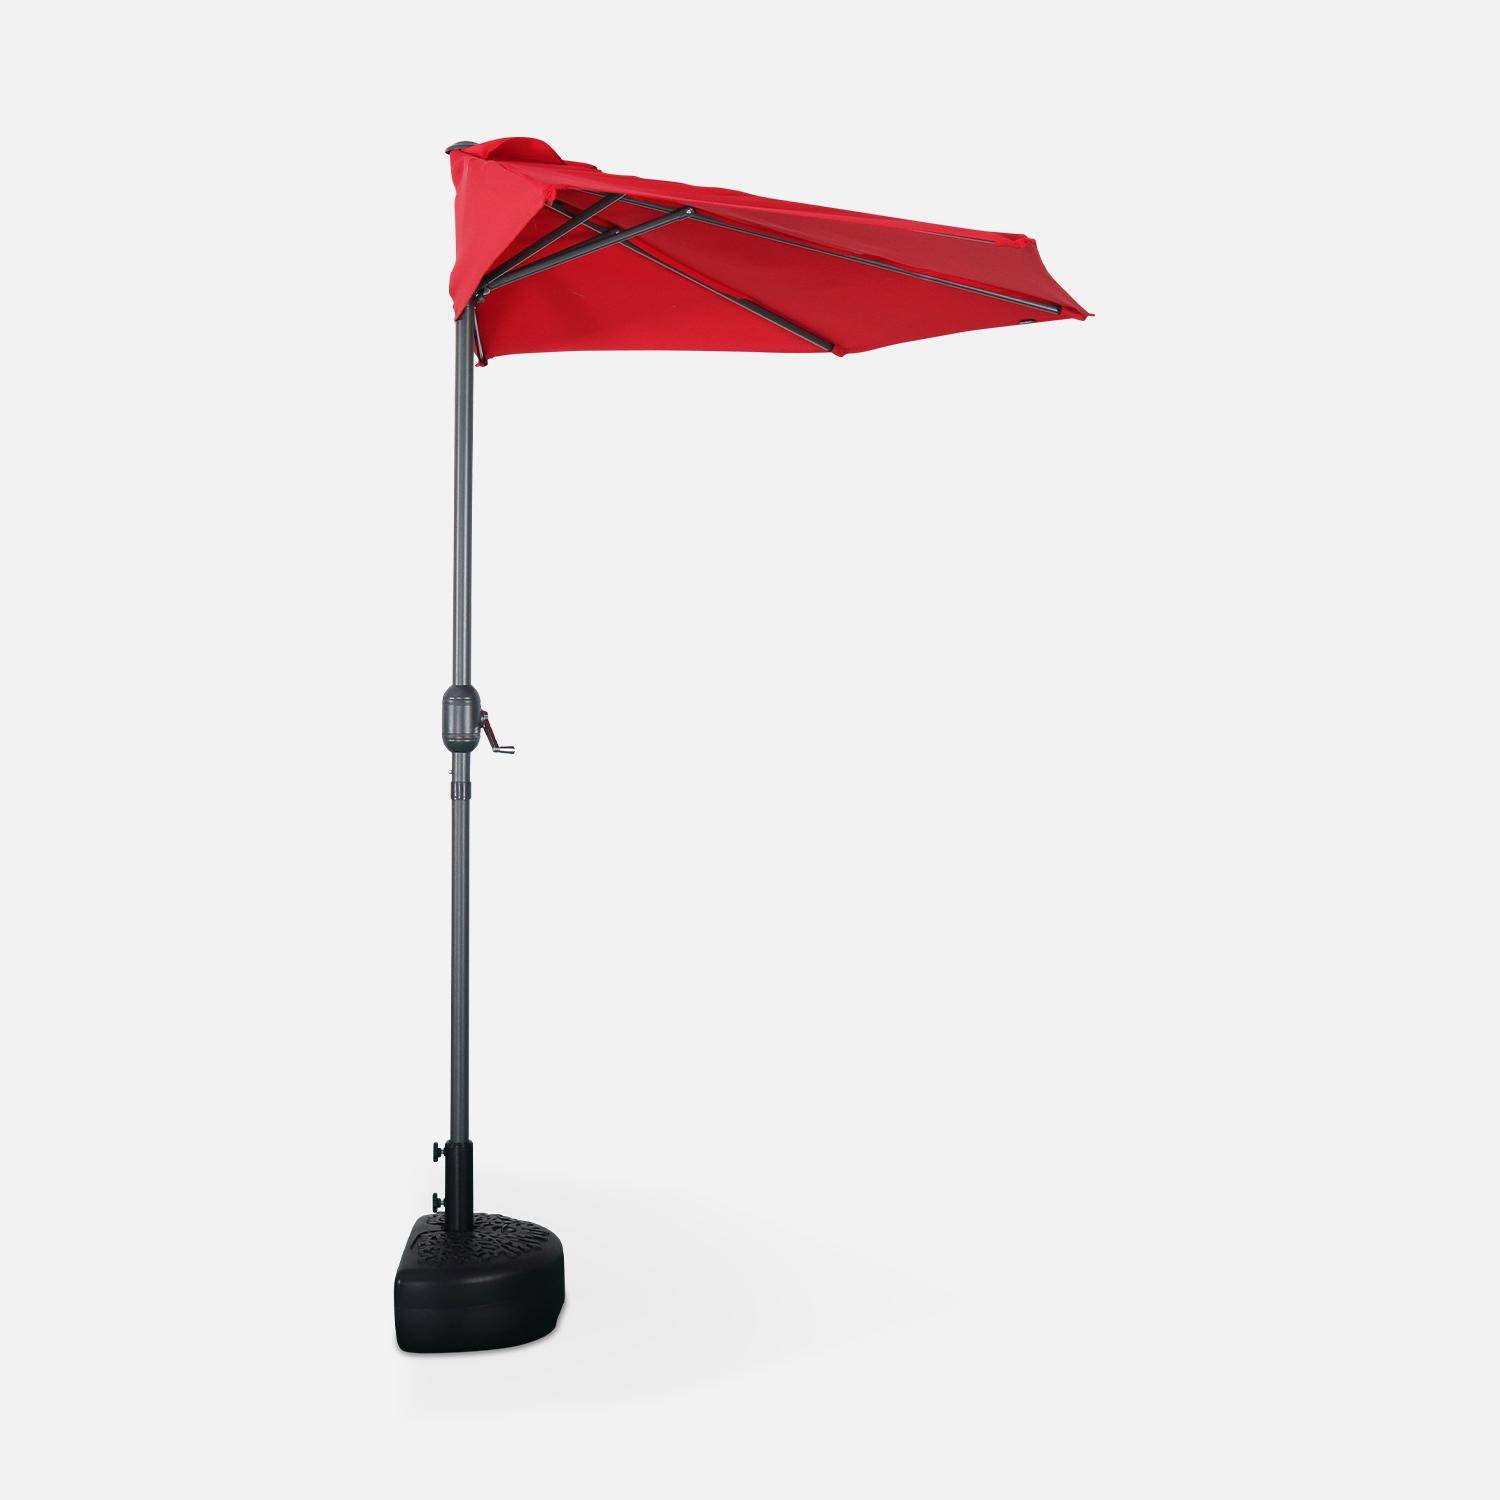  Parasol para balcón Ø250cm  – CALVI – Pequeño parasol recto, mástil en aluminio con manivela, tela color rojo Photo3